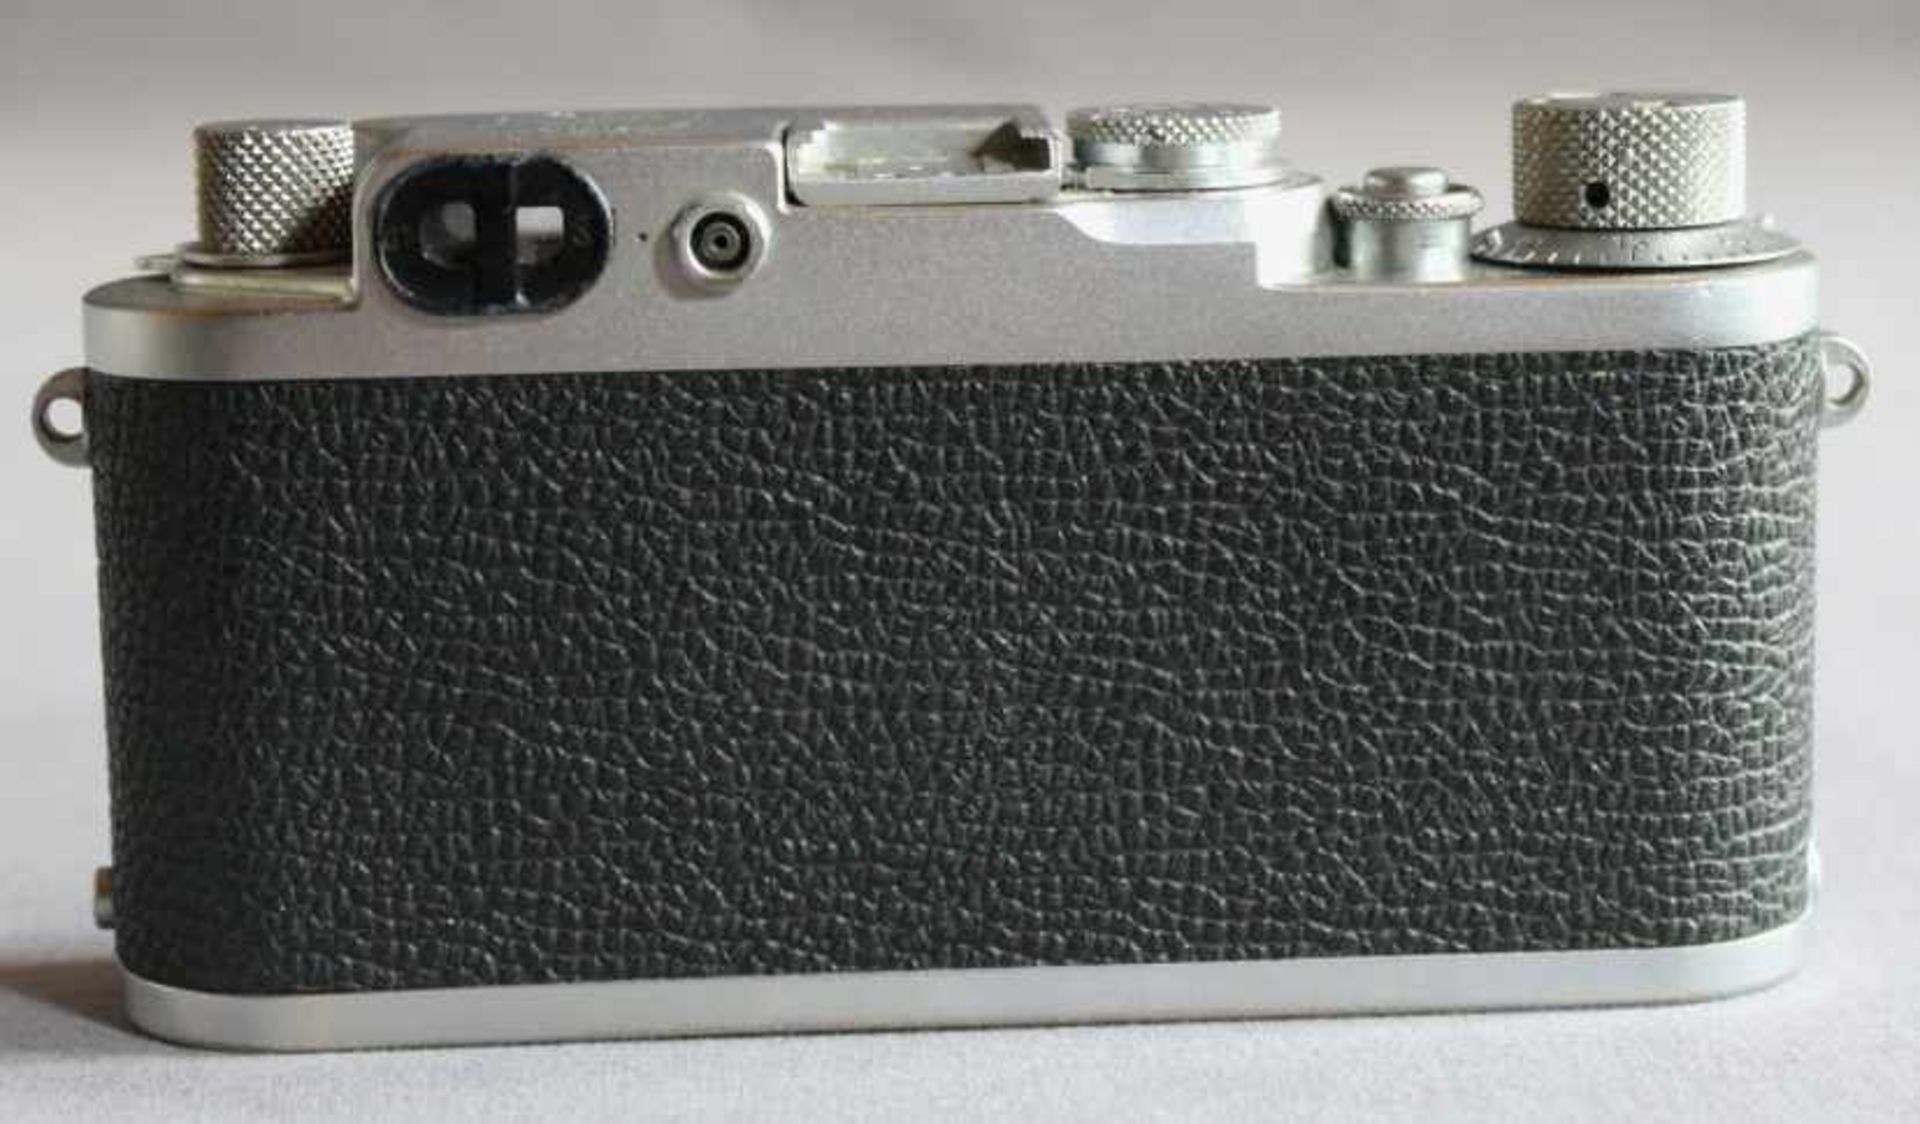 1 Kamera-Body ohne Bereitschaftstasche "Leica, DBP Ernst Leitz GmbH", Modell IIIf (Baujahr 1950- - Image 2 of 4